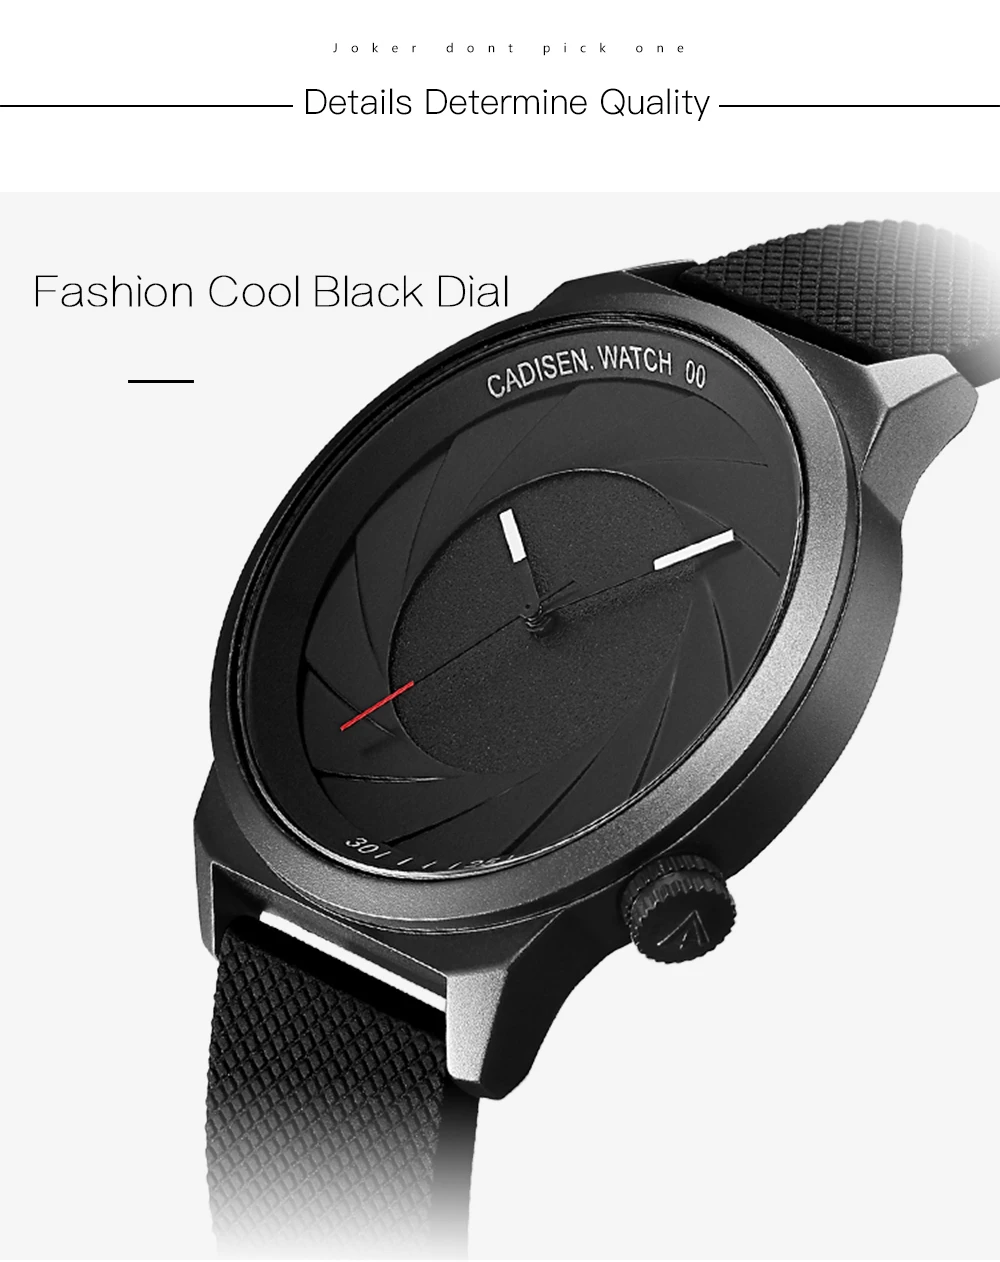 Cadisen Мужские Простые аналоговые кварцевые часы, модные повседневные наручные часы с силиконовым ремешком для мужчин и мальчиков, черные CL9056G-1